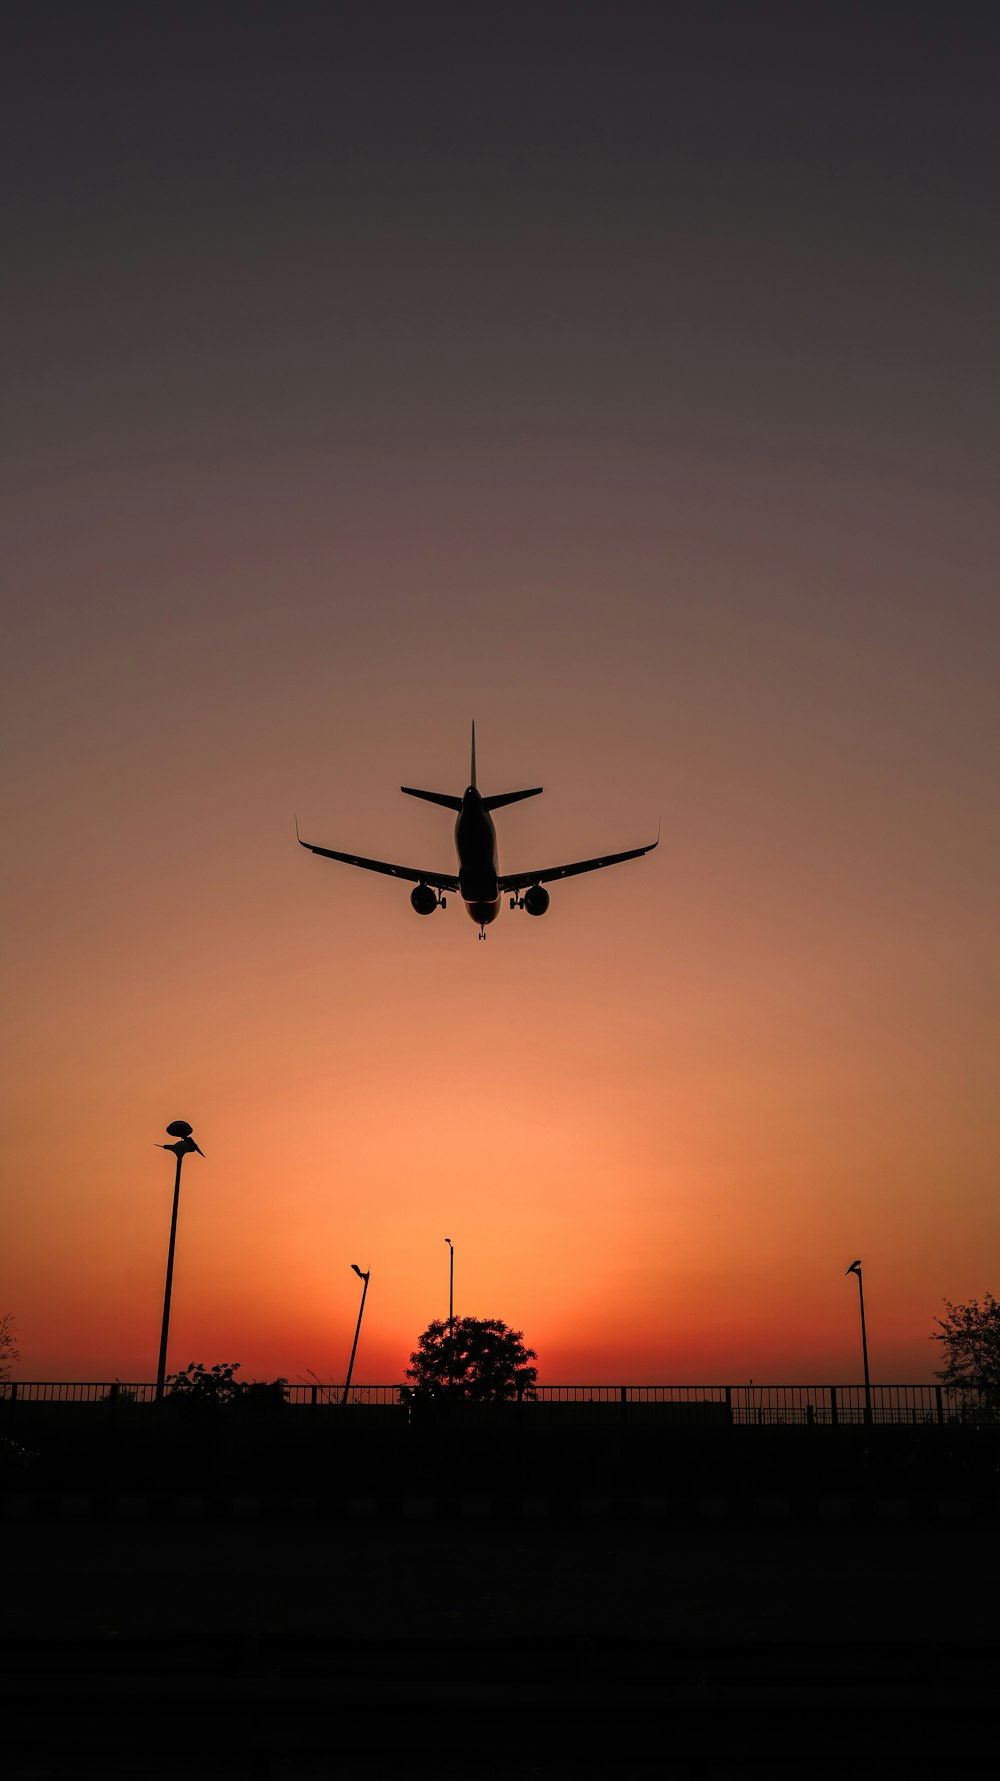 silueta de avión volando durante la puesta de sol